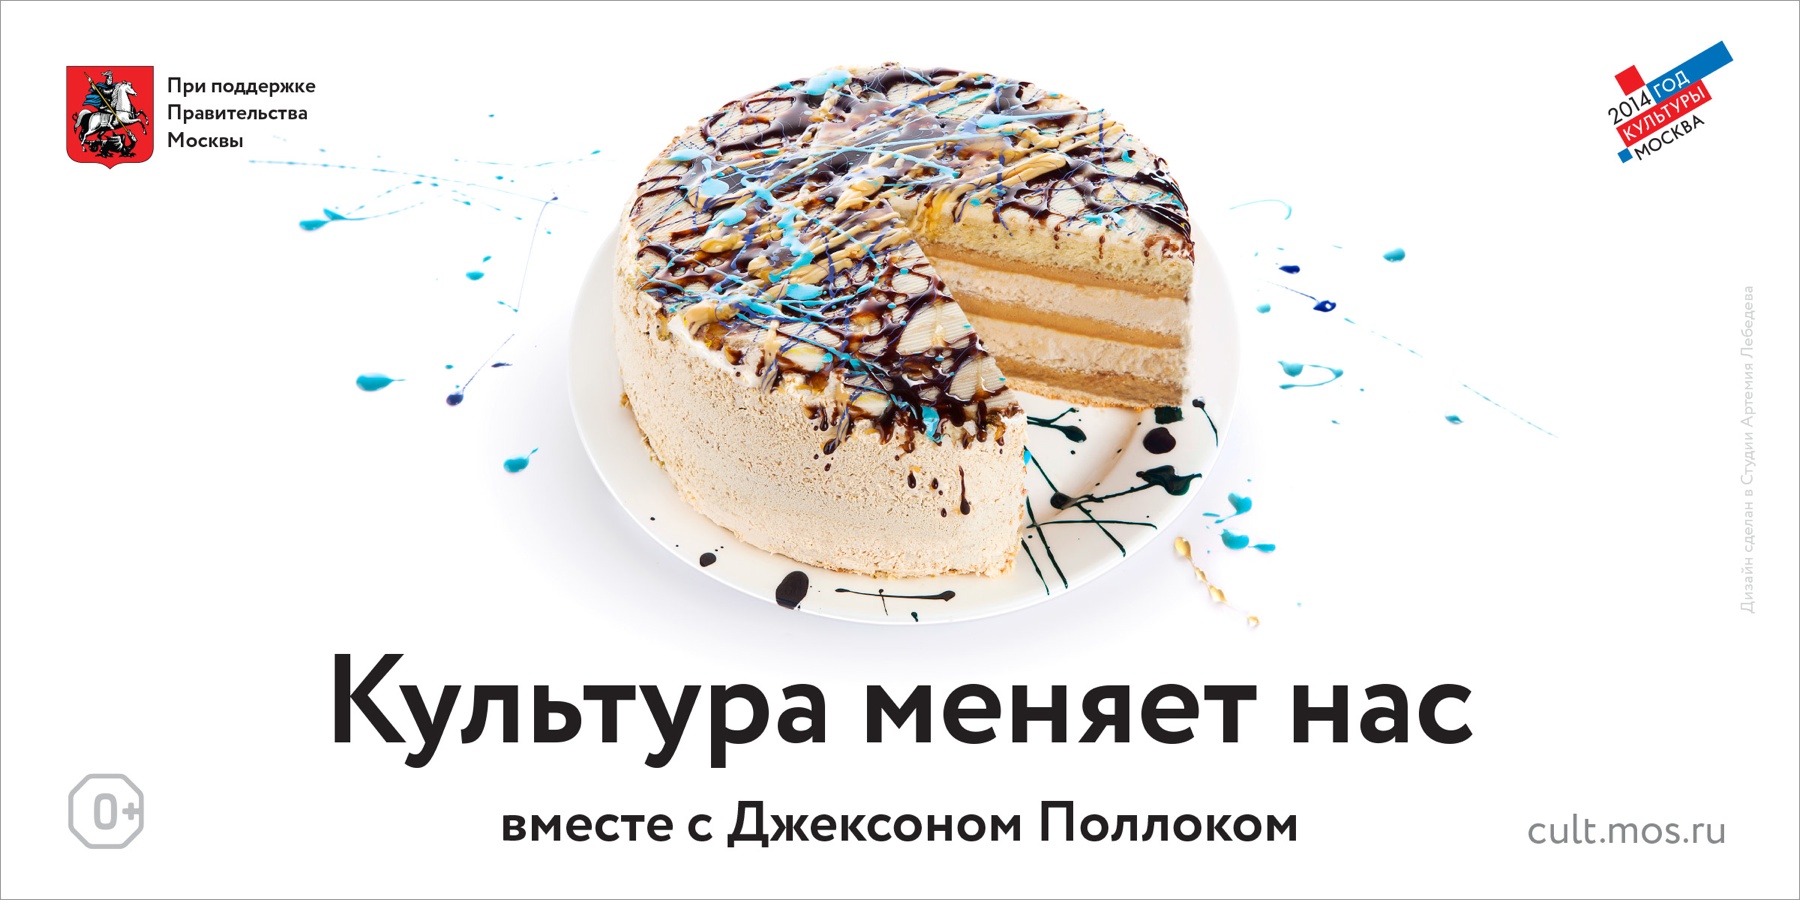 俄罗斯文化部宣传广告设计